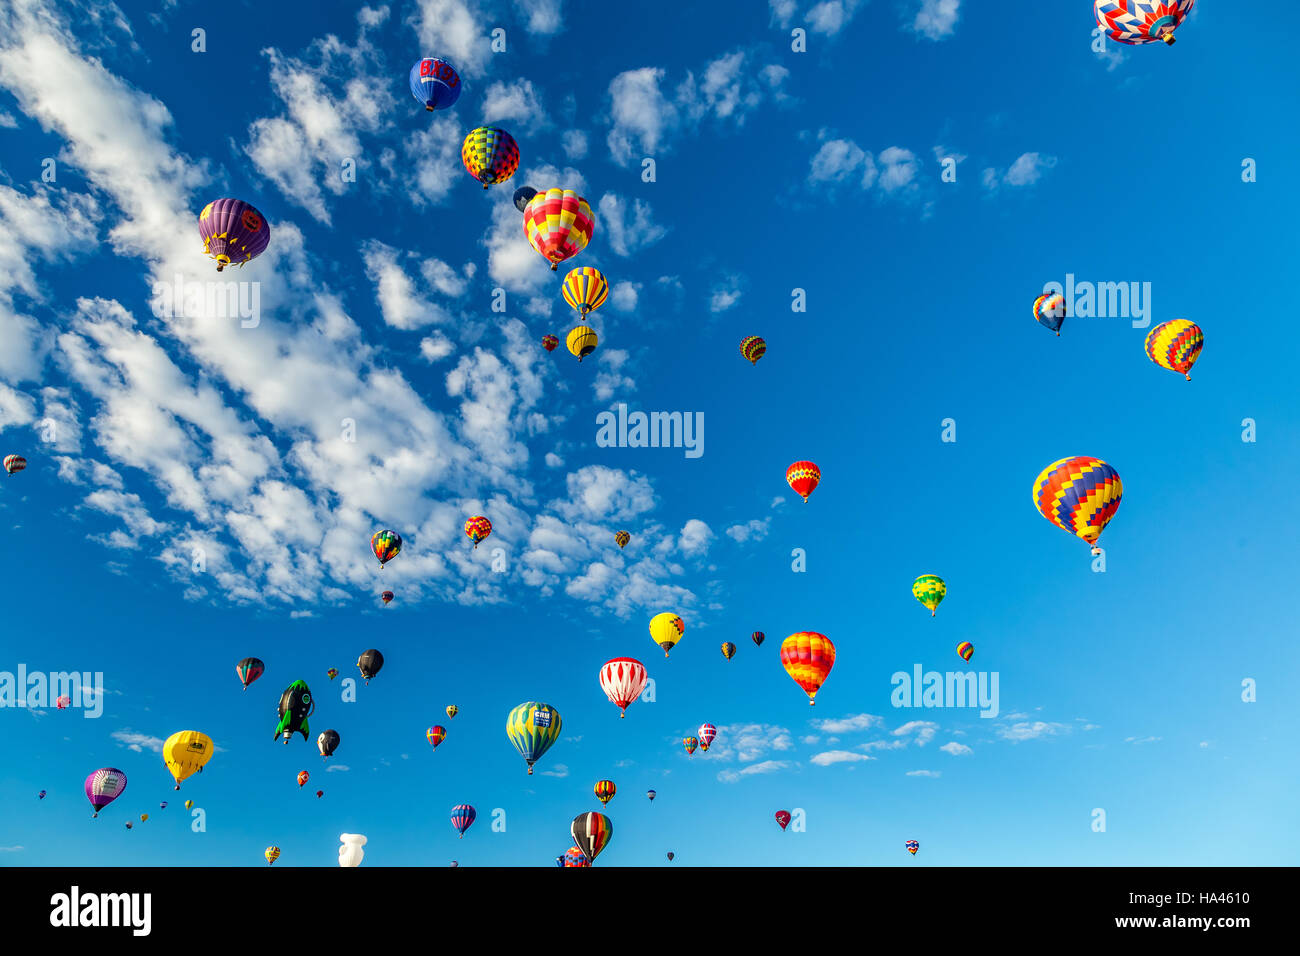 Los globos de aire caliente sobrevolar la ciudad de Albuquerque, Nuevo México, durante la ascensión en masa en la reunión anual de la Fiesta del Globo de Aire Caliente Foto de stock